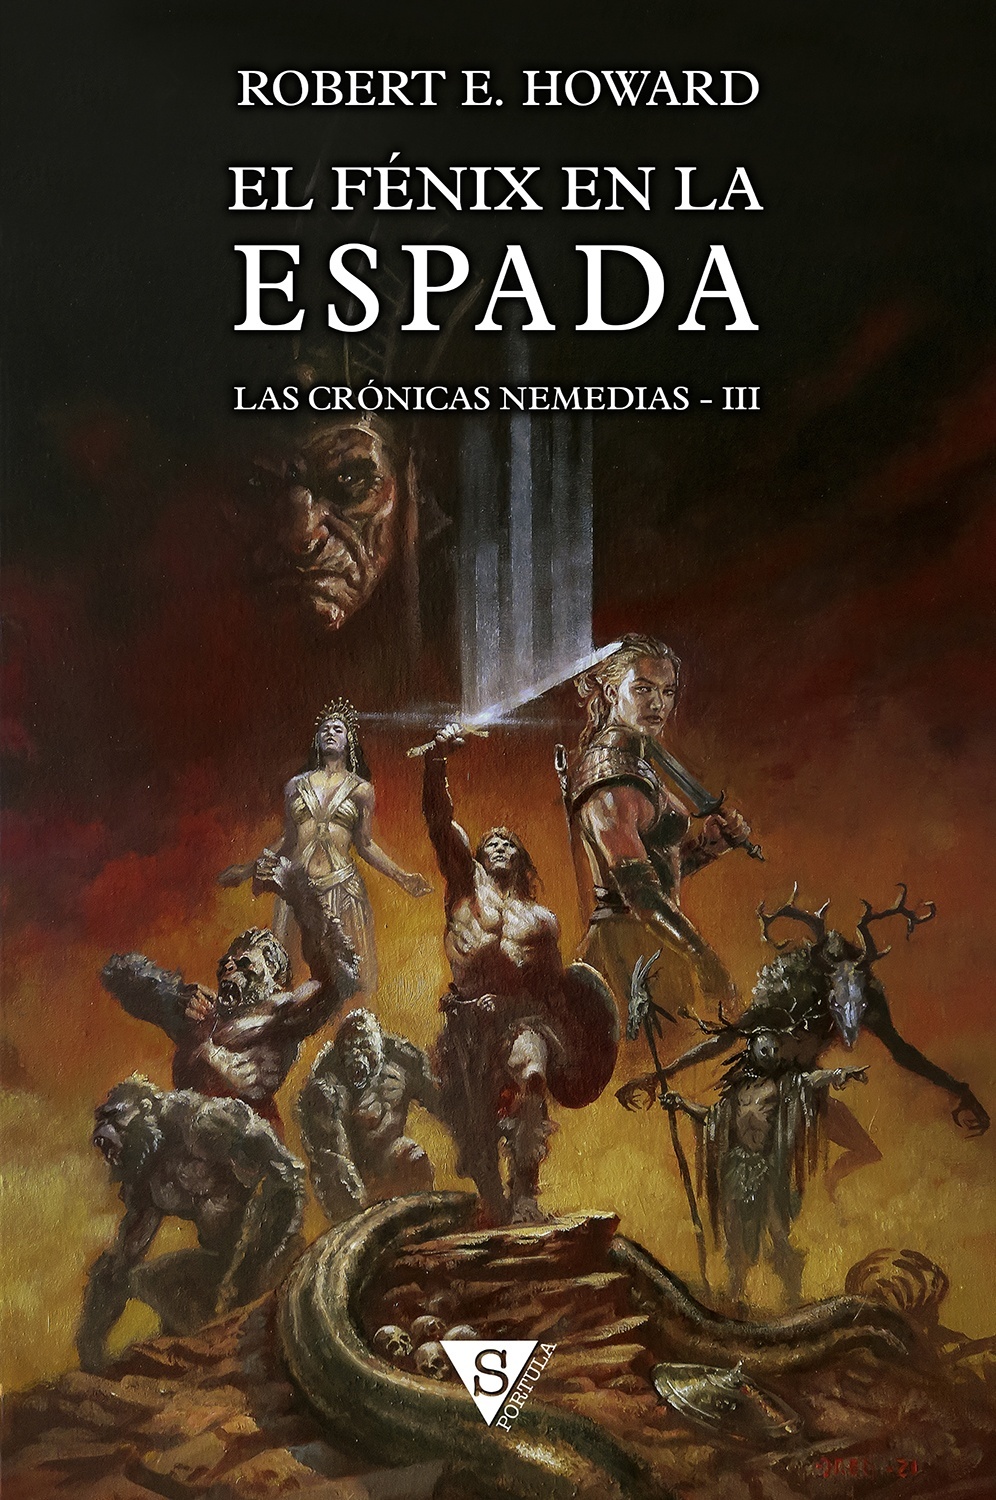 Fénix en la espada, El (edición en tapa dura) "Las Crónicas Nemedias III". 